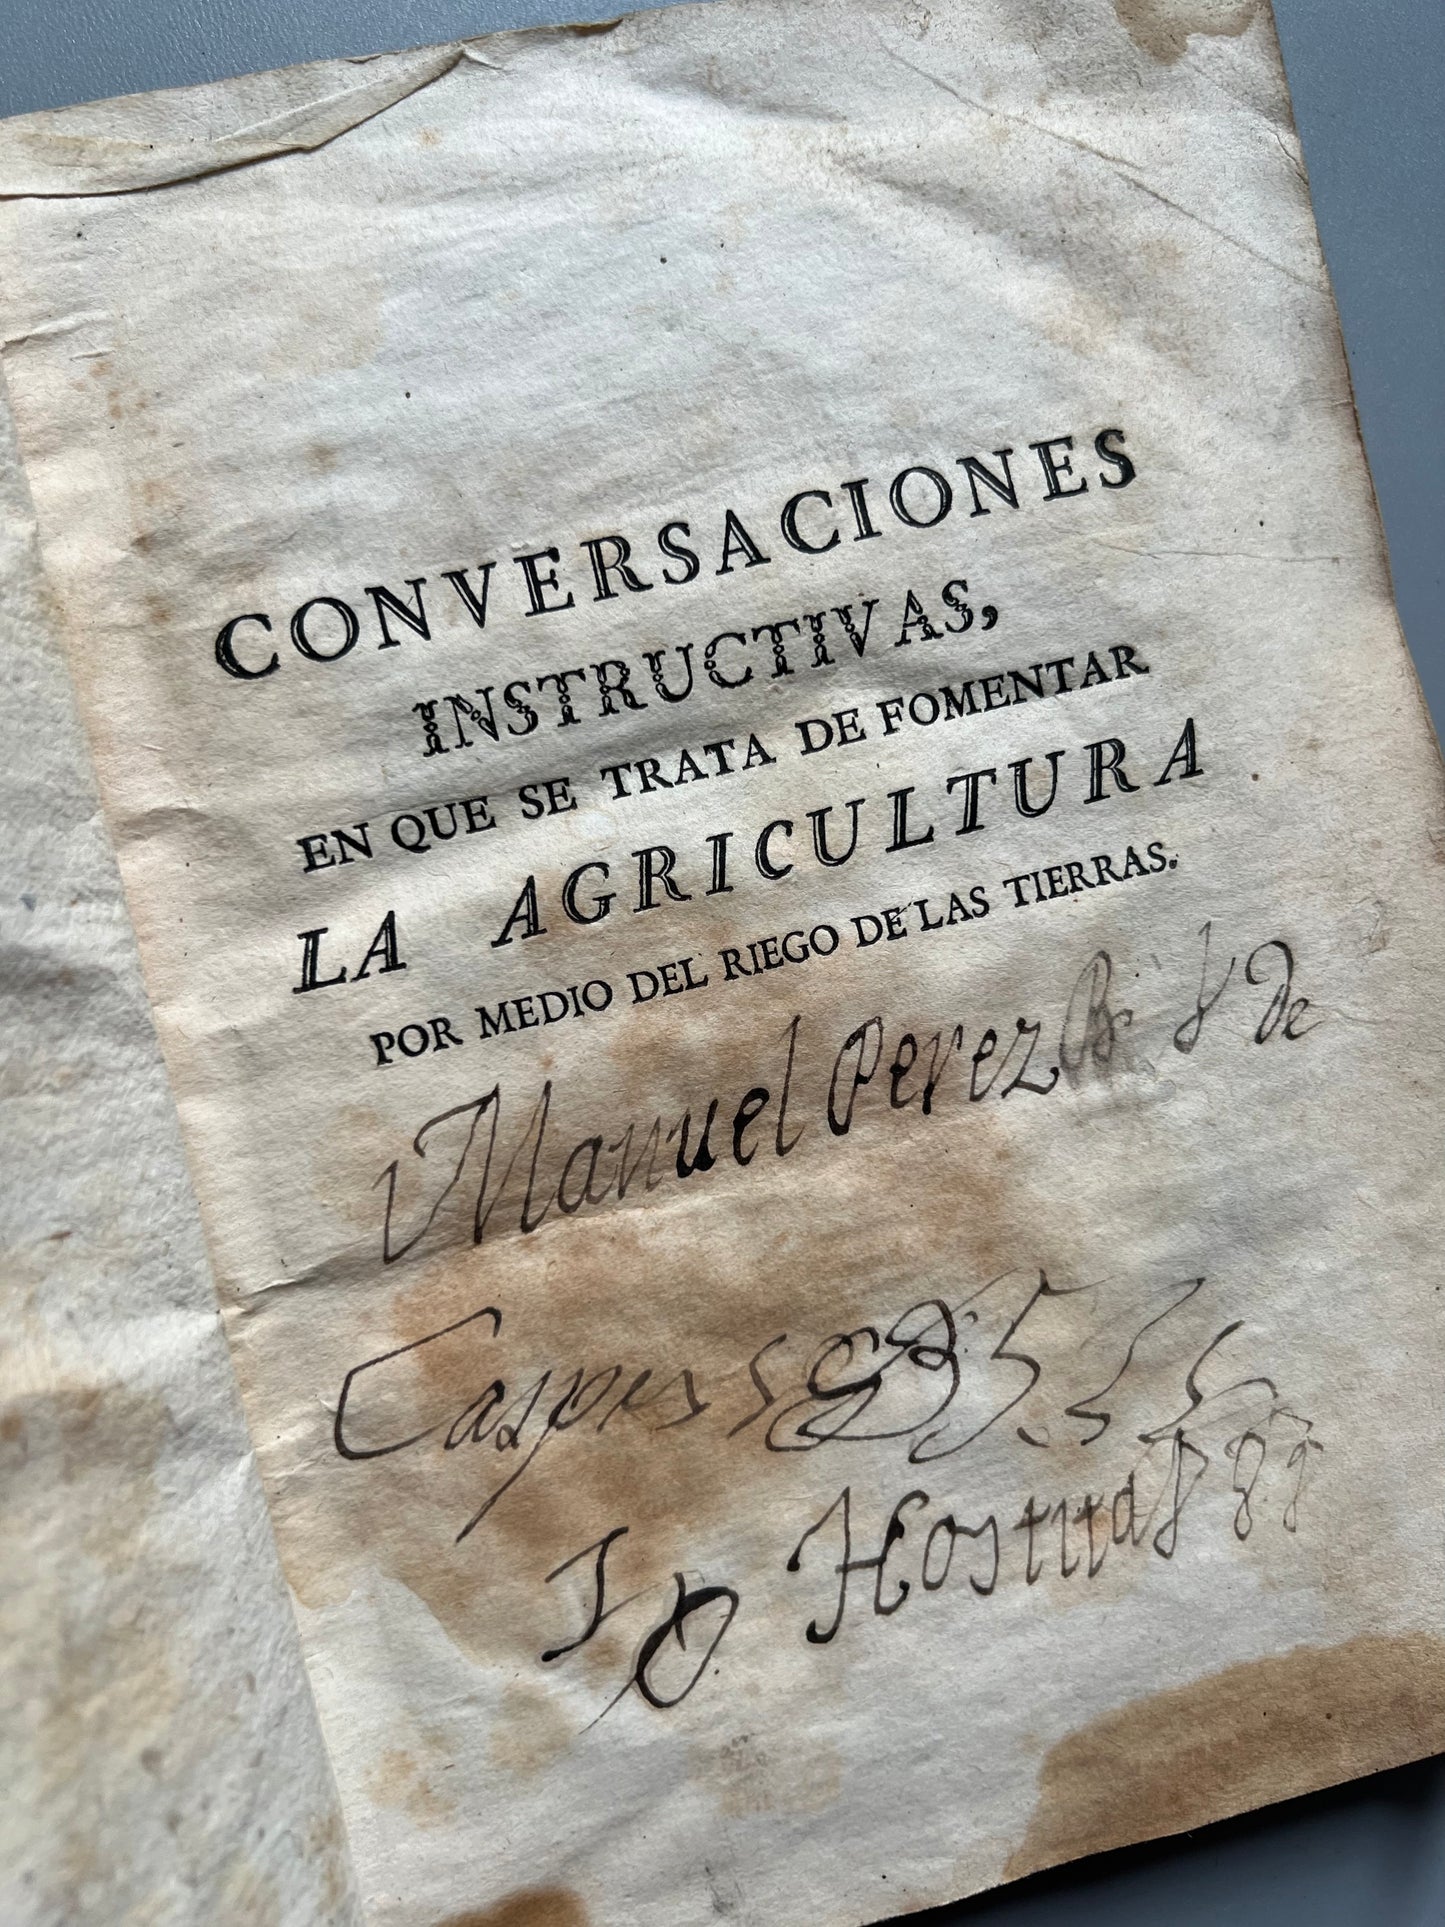 Conversaciones instructivas en que se trata de fomentar la agricultura por medio del riego de las tierras, Francisco Vidal - Imprenta de D. Antonio de Sancha, 1778